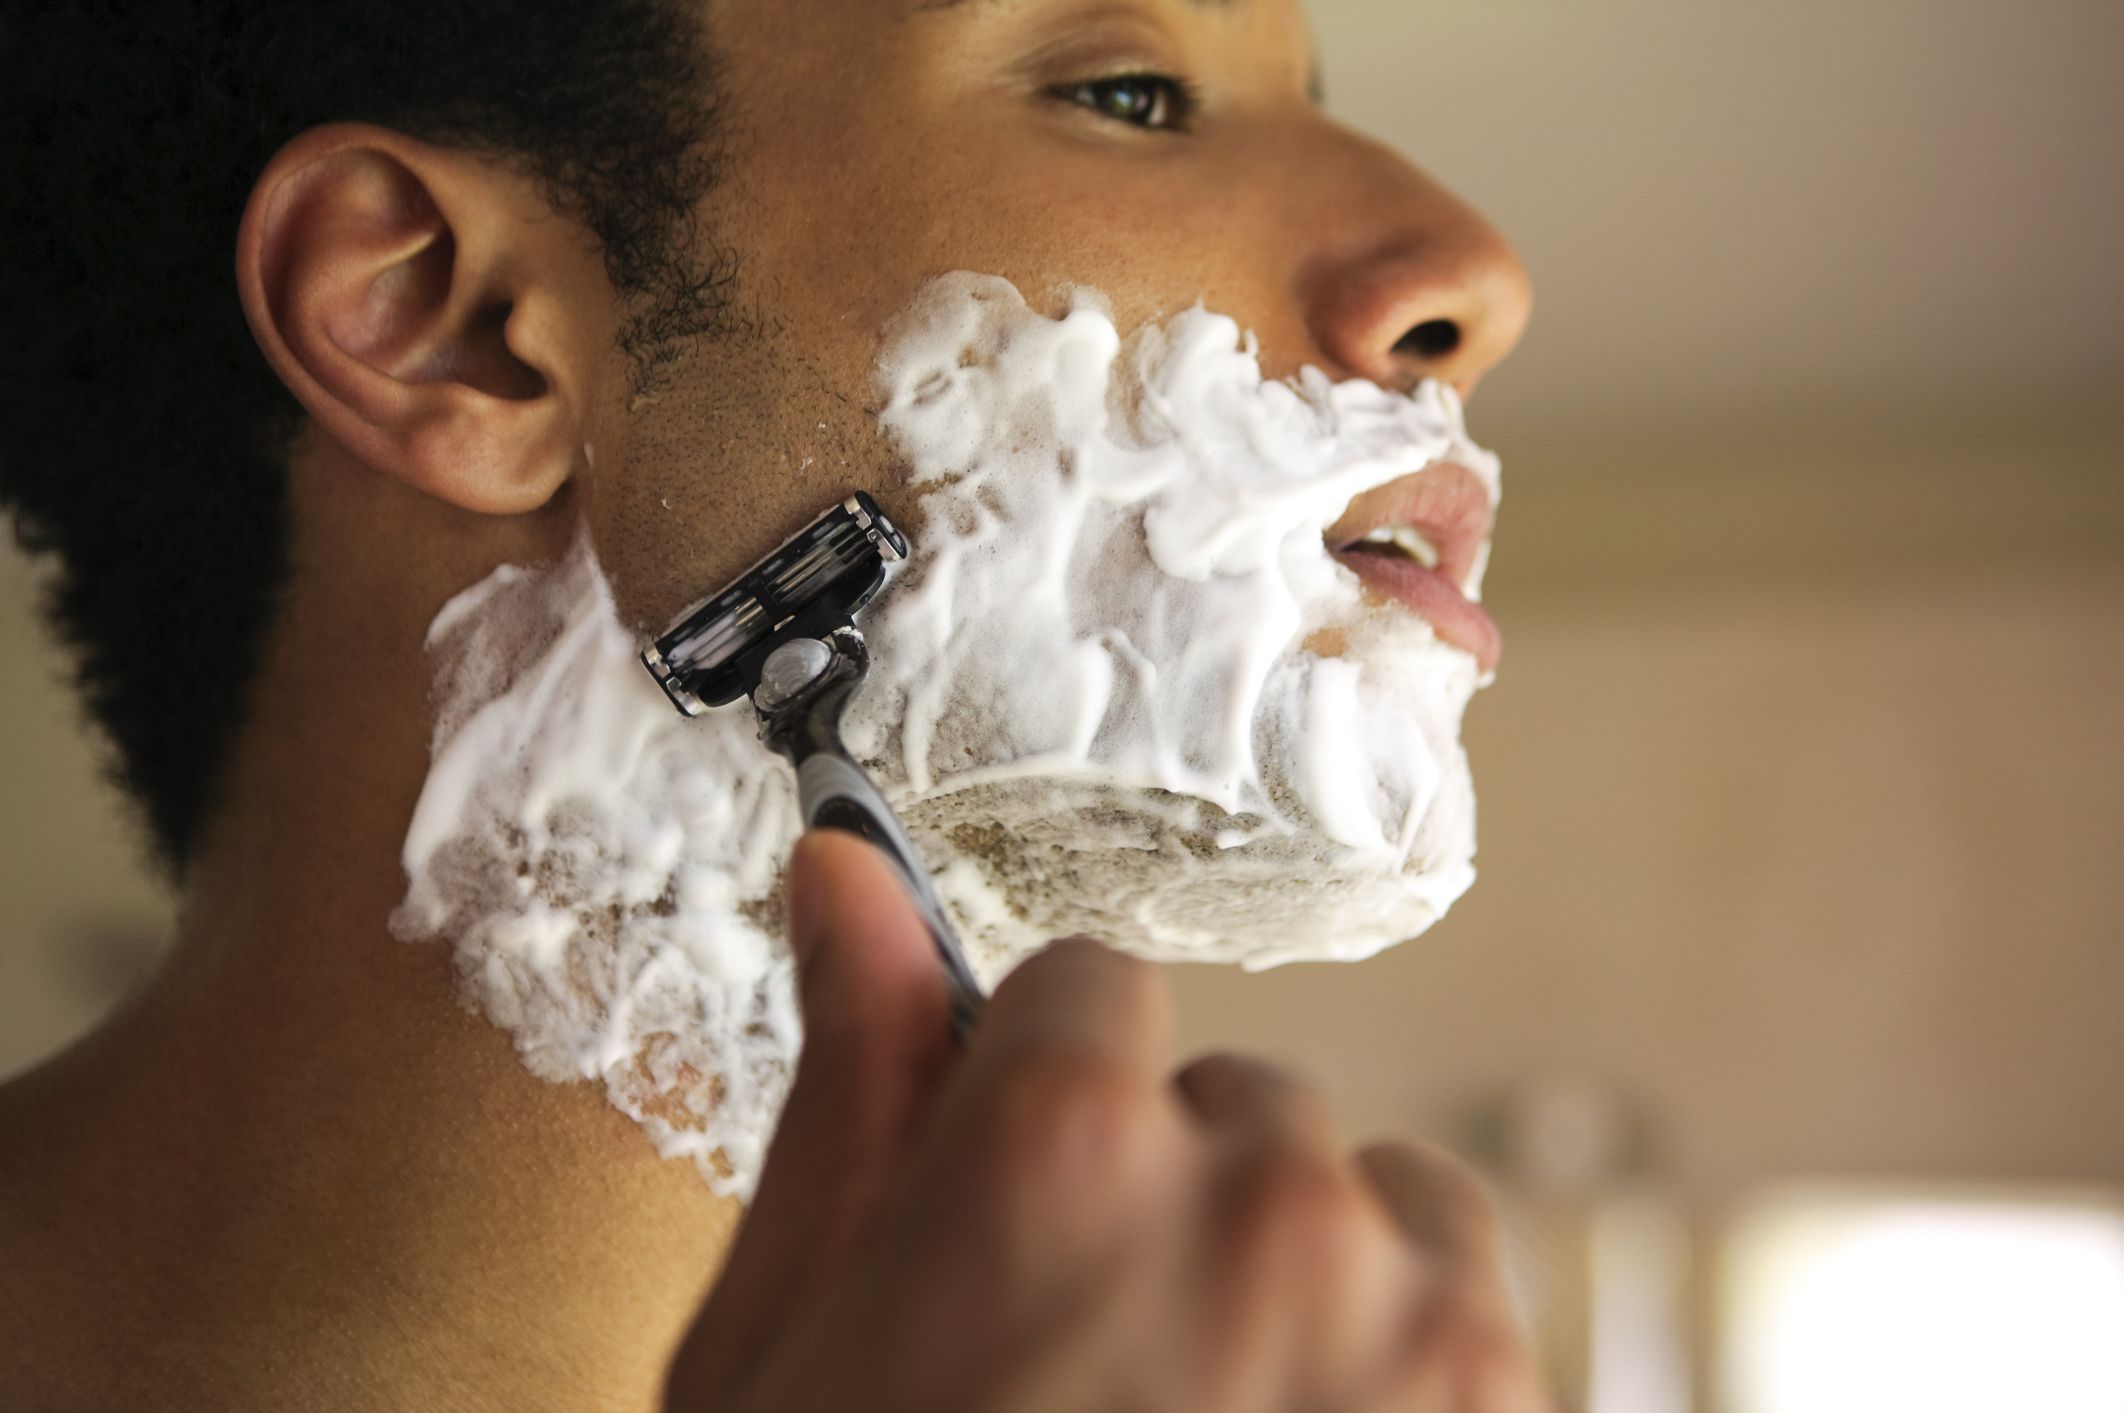 Побрить мужчину в домашних условиях. Пена джилет чистое бритье. Мужчина бреется. Пена для бритья для мужчин. Мужик в пену для бритья.